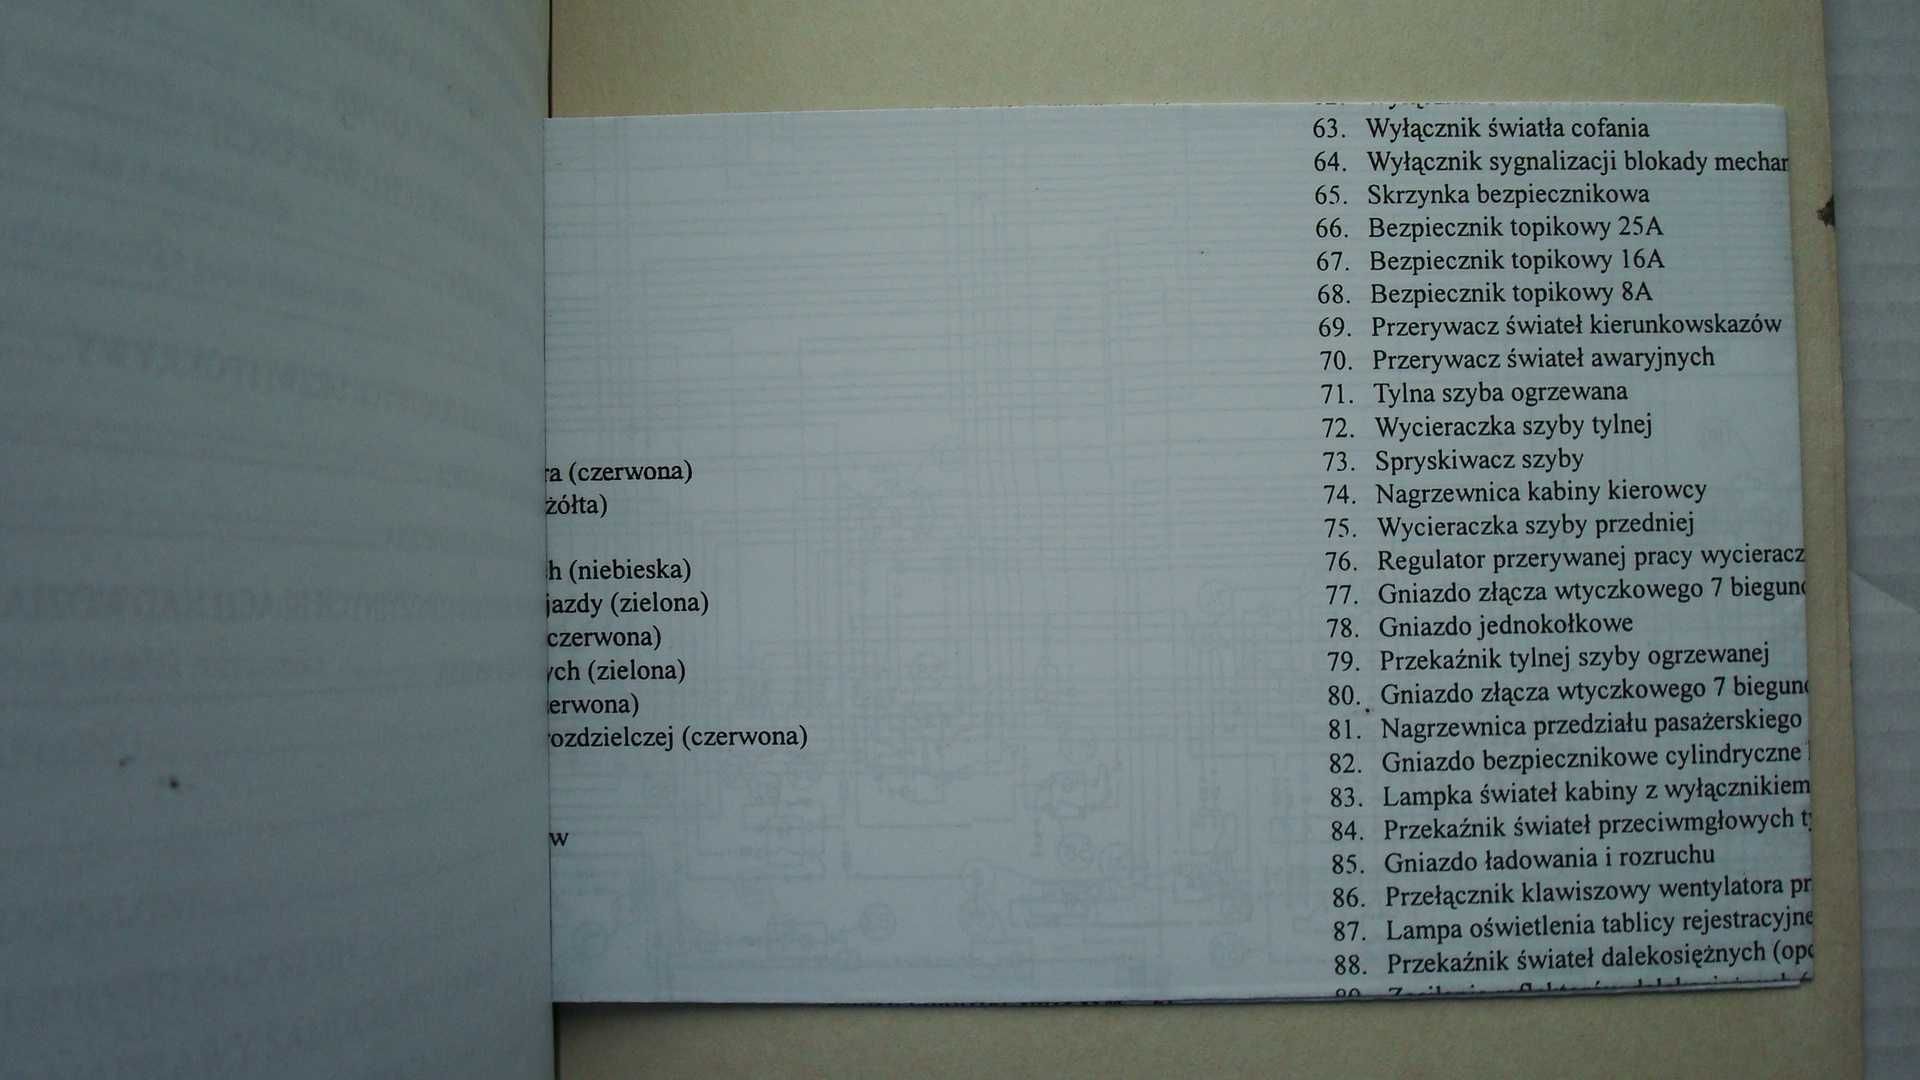 HONKER 4x4 DAEWOO książka napraw HONKER DAEWOO Naprawa PL 1997r